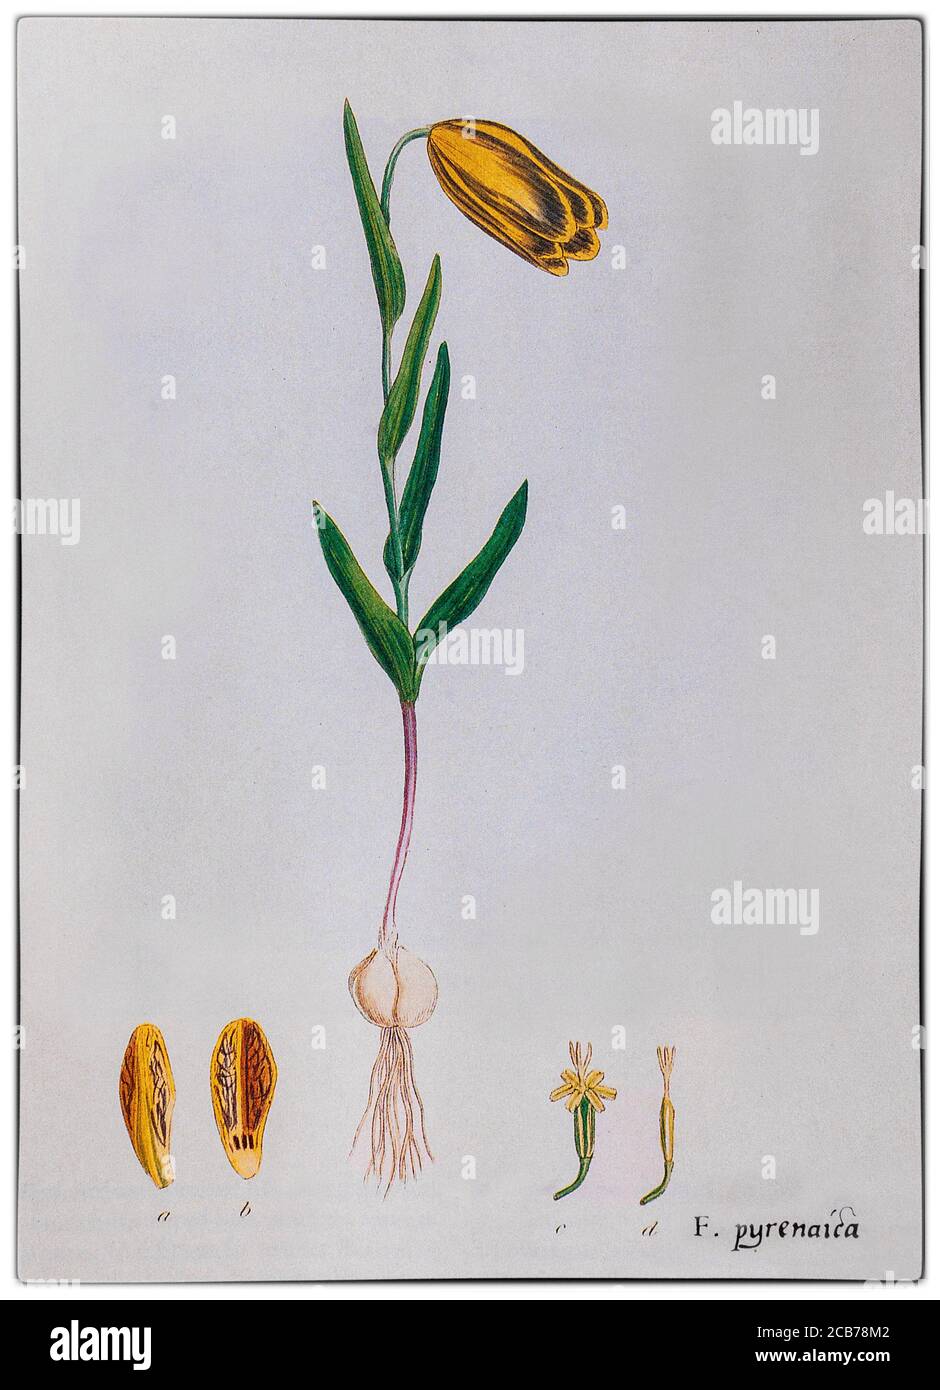 Fritillary pyrenaica, auch bekannt als Pyrenäenschlange, gemalt von Pierre-Joseph Redouté (1759-1840), einem belgischen Maler und Botaniker. Eine blühende Pflanze in der Familie der Liliengewächse, sie stammt aus den Pyrenäen in Spanien und Frankreich und wird als Zierpflanze weit verbreitet kultiviert. Stockfoto